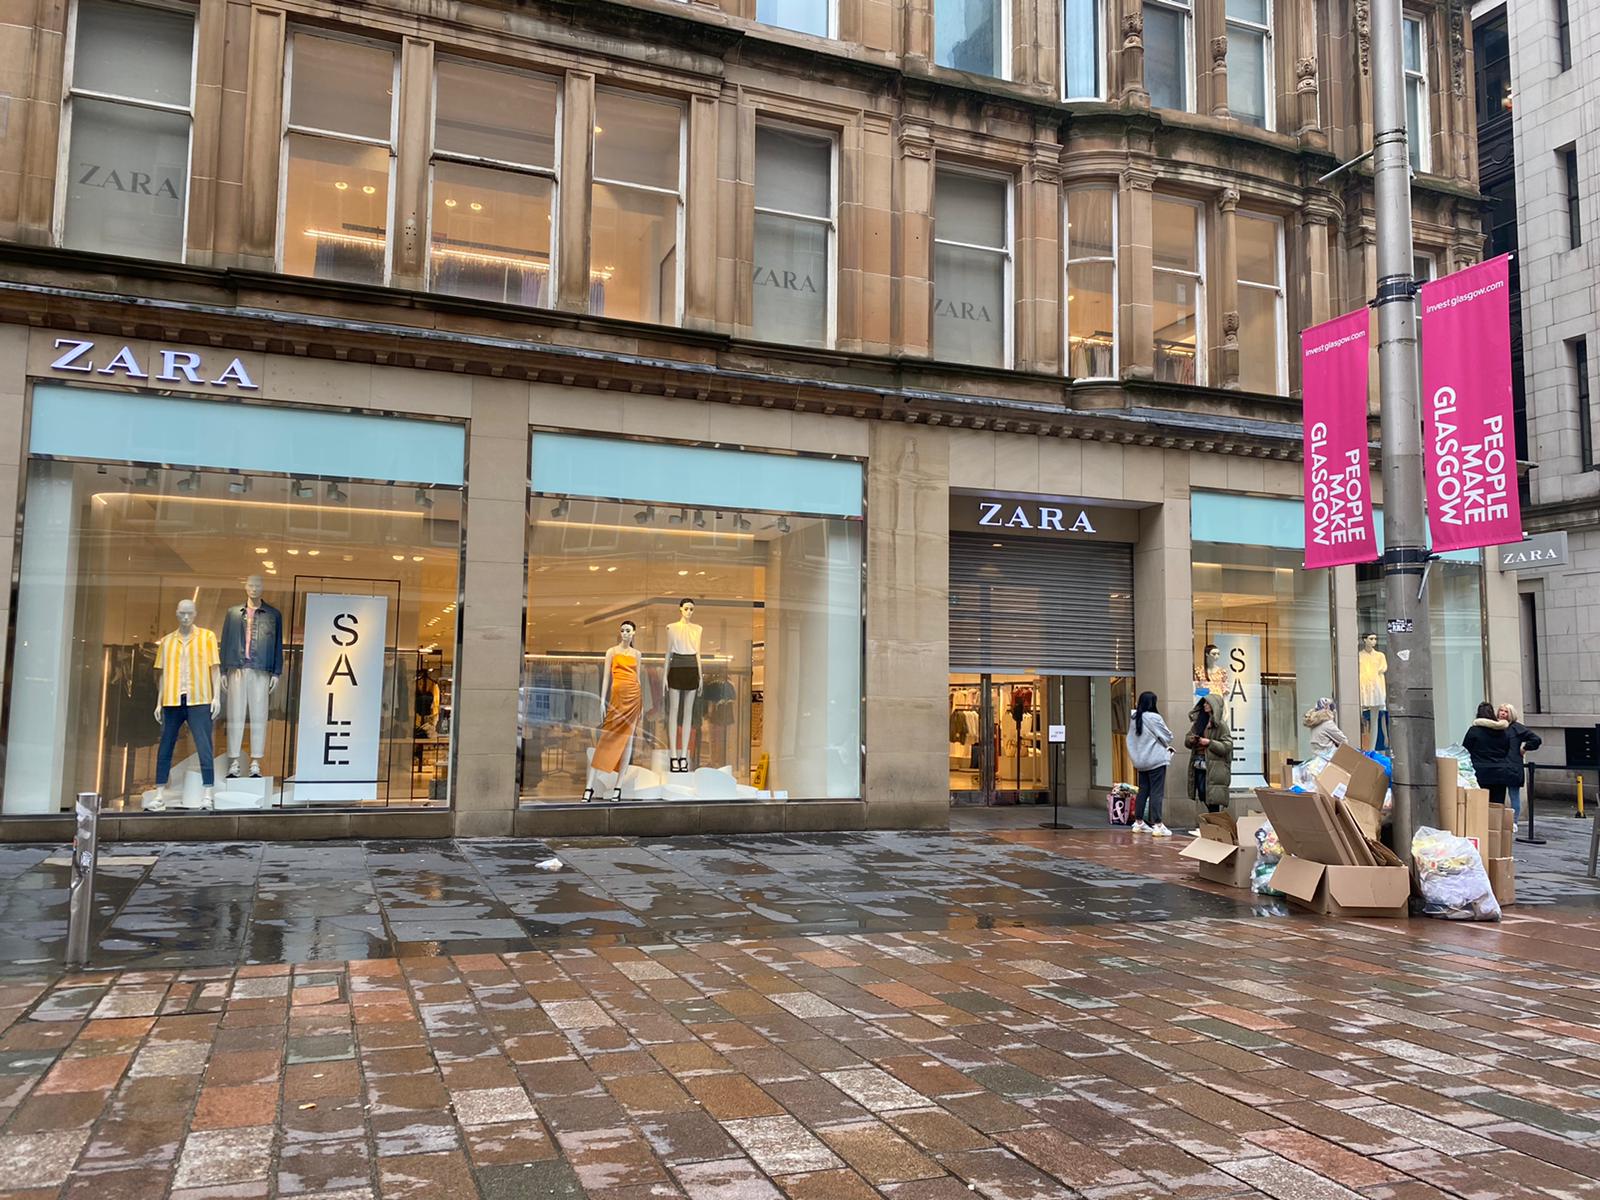 Glasgow city centre non-essential shops 